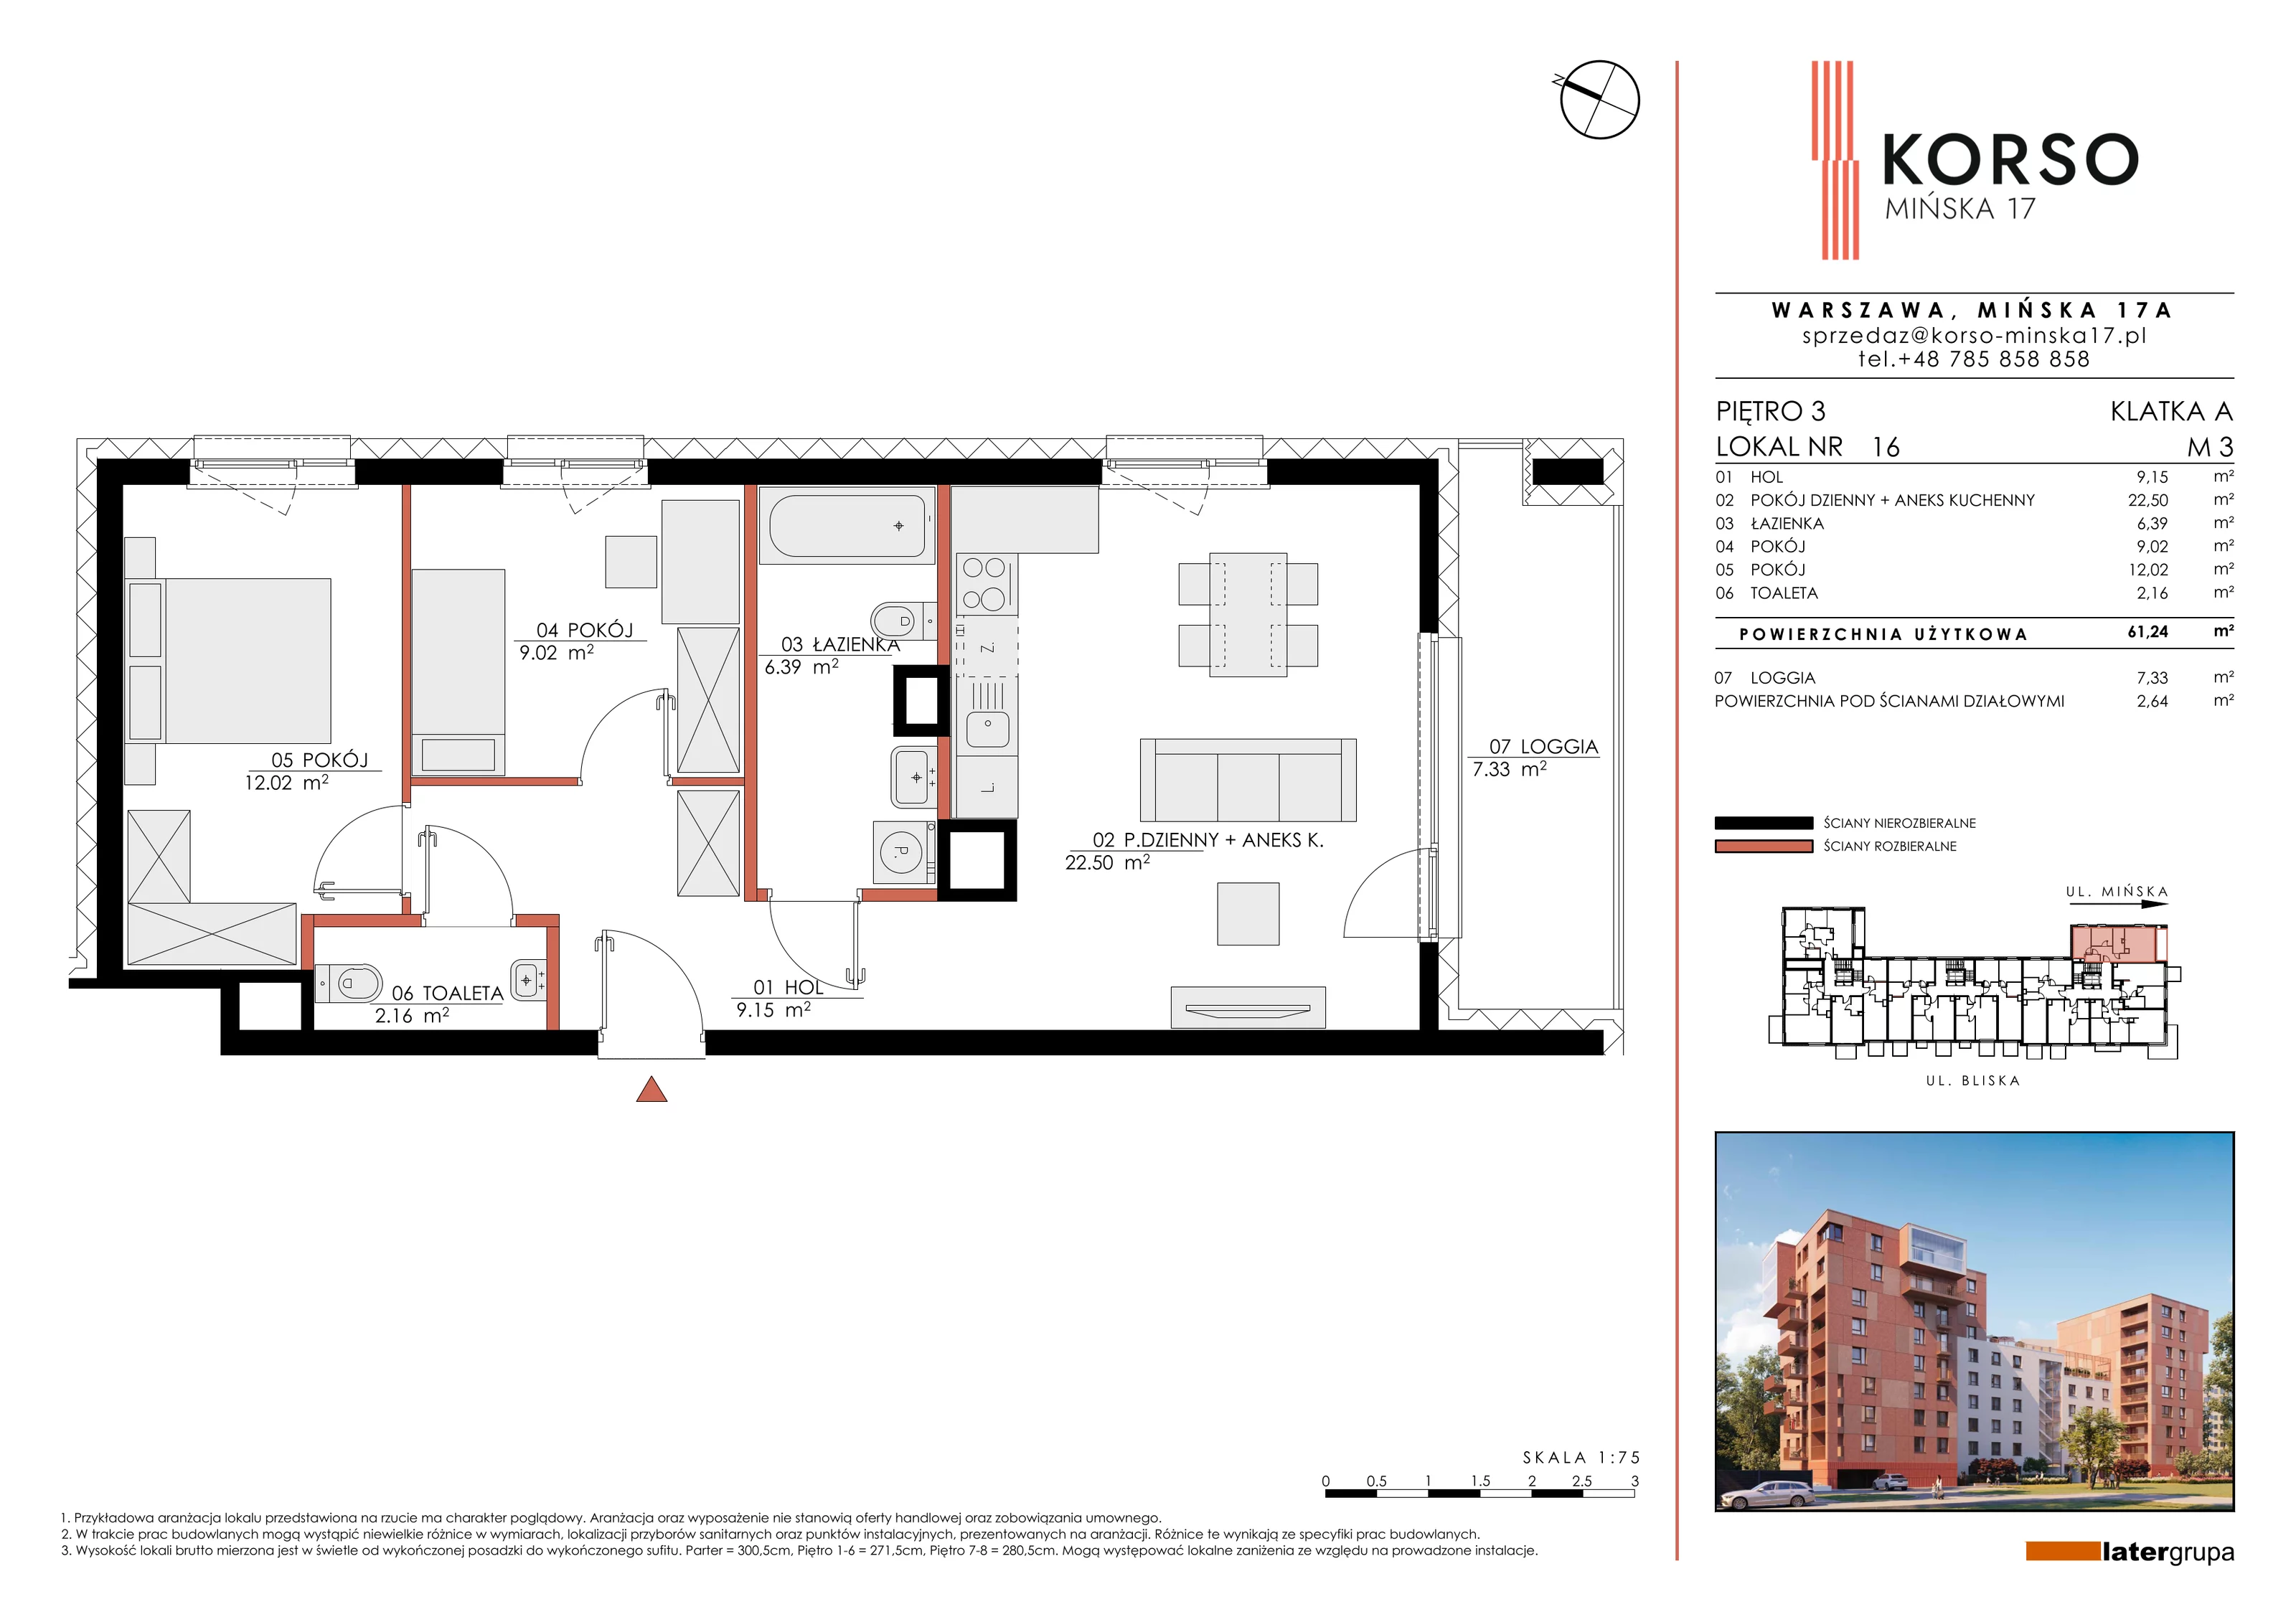 Mieszkanie 61,24 m², piętro 3, oferta nr 16, KORSO Mińska 17, Warszawa, Praga Południe, Kamionek, ul. Mińska 17